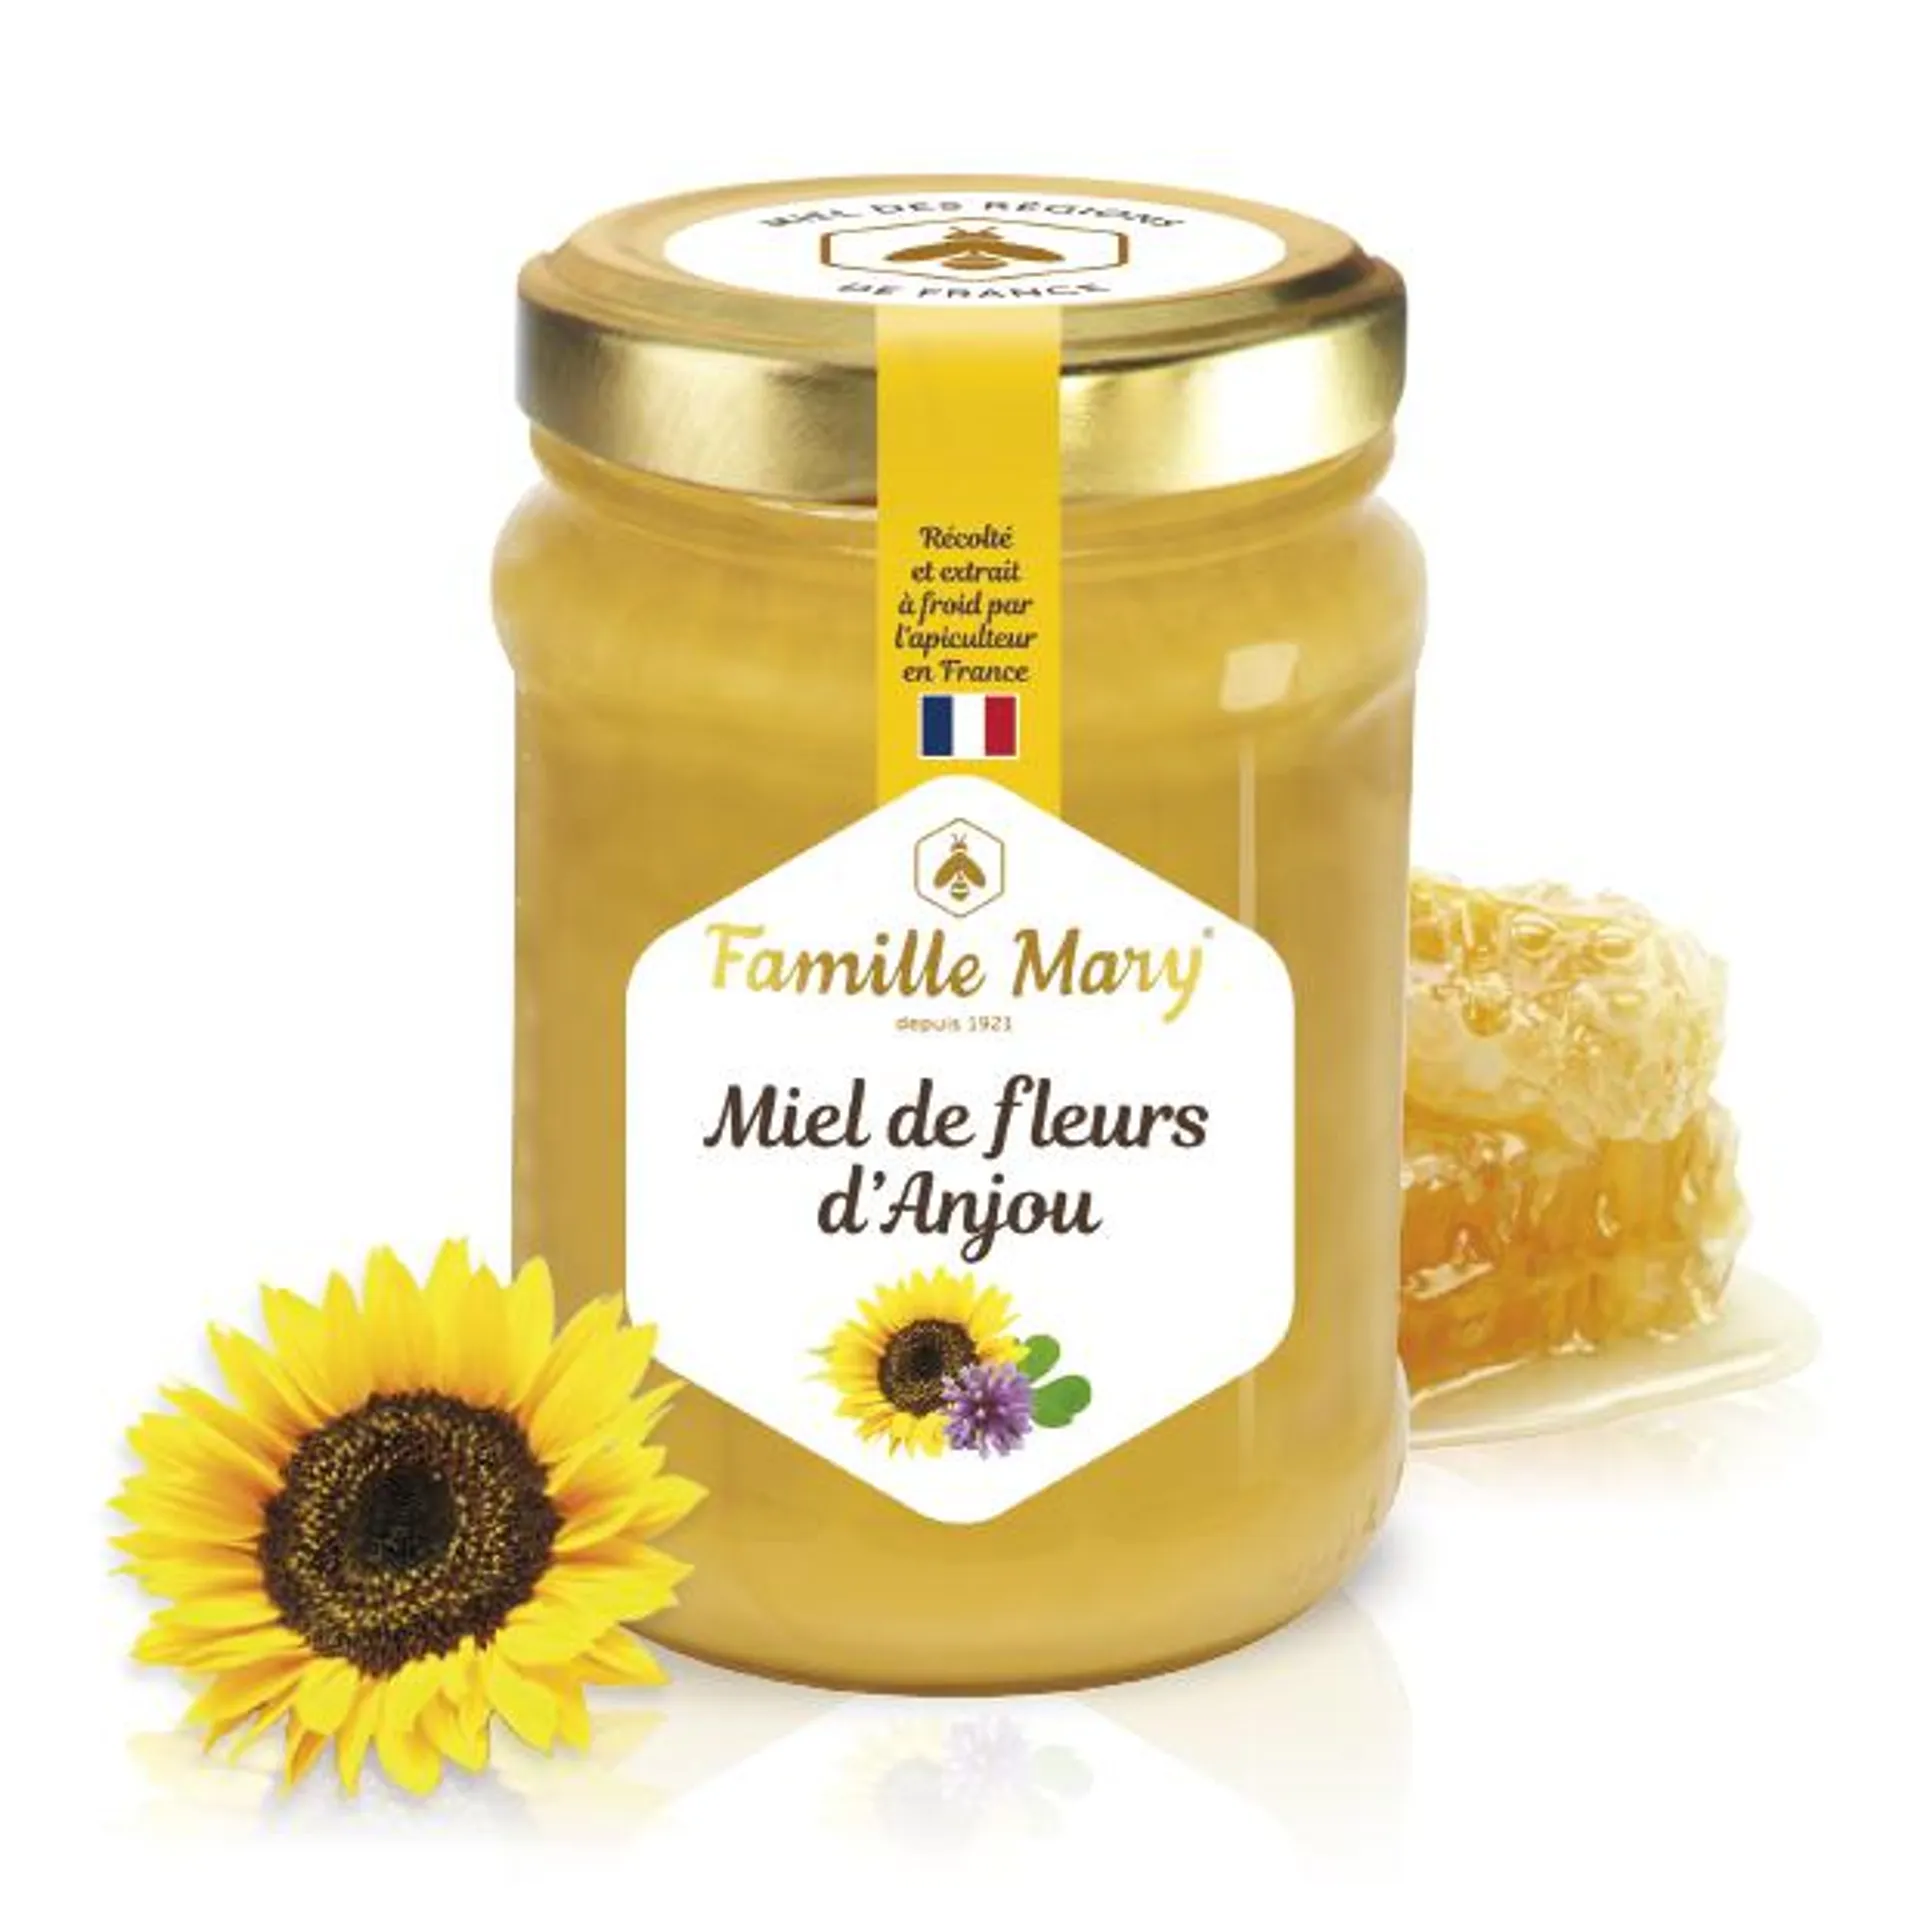 Miel de fleurs d'Anjou